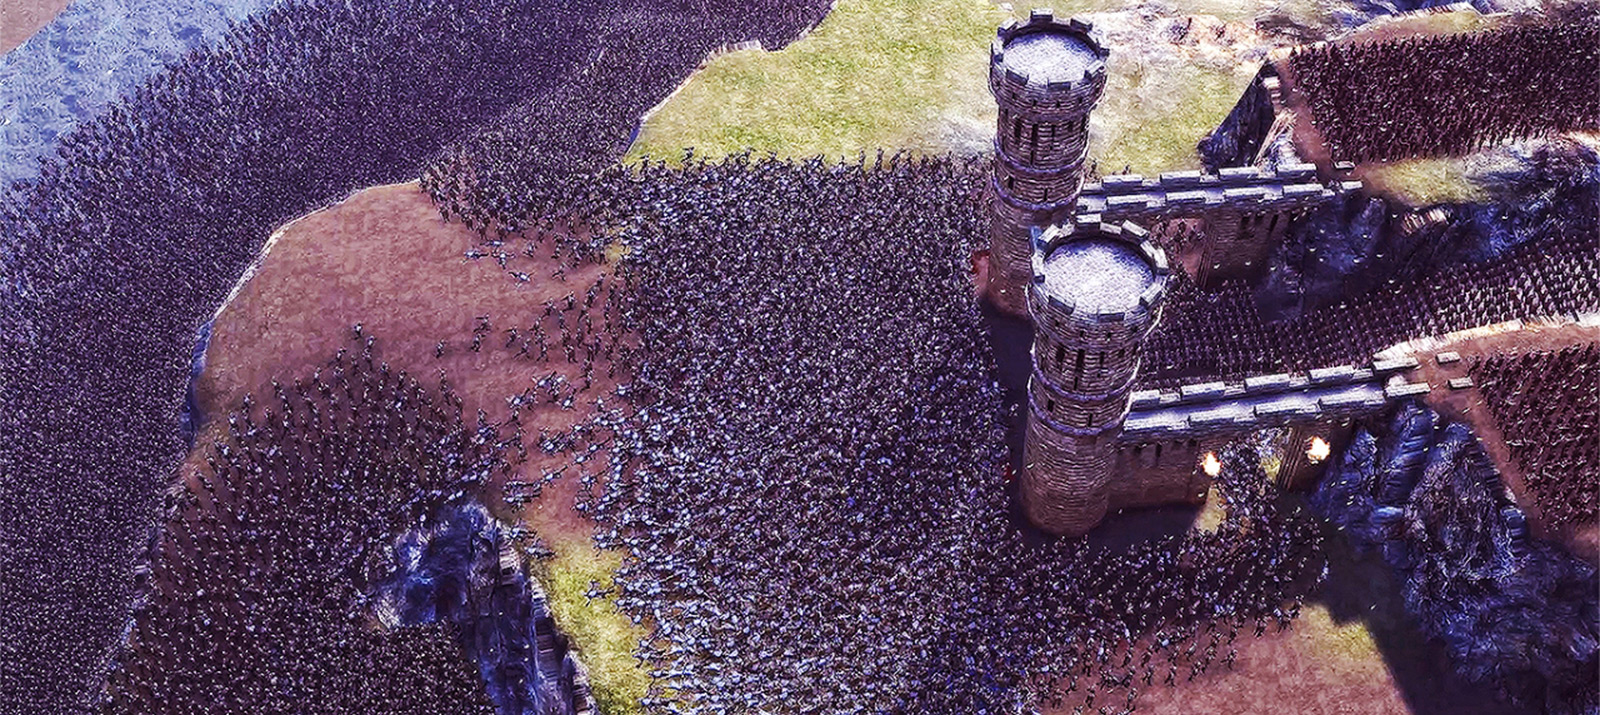 Осада замка с 25 тысячами персонажей в симуляторе сражений - Shazoo